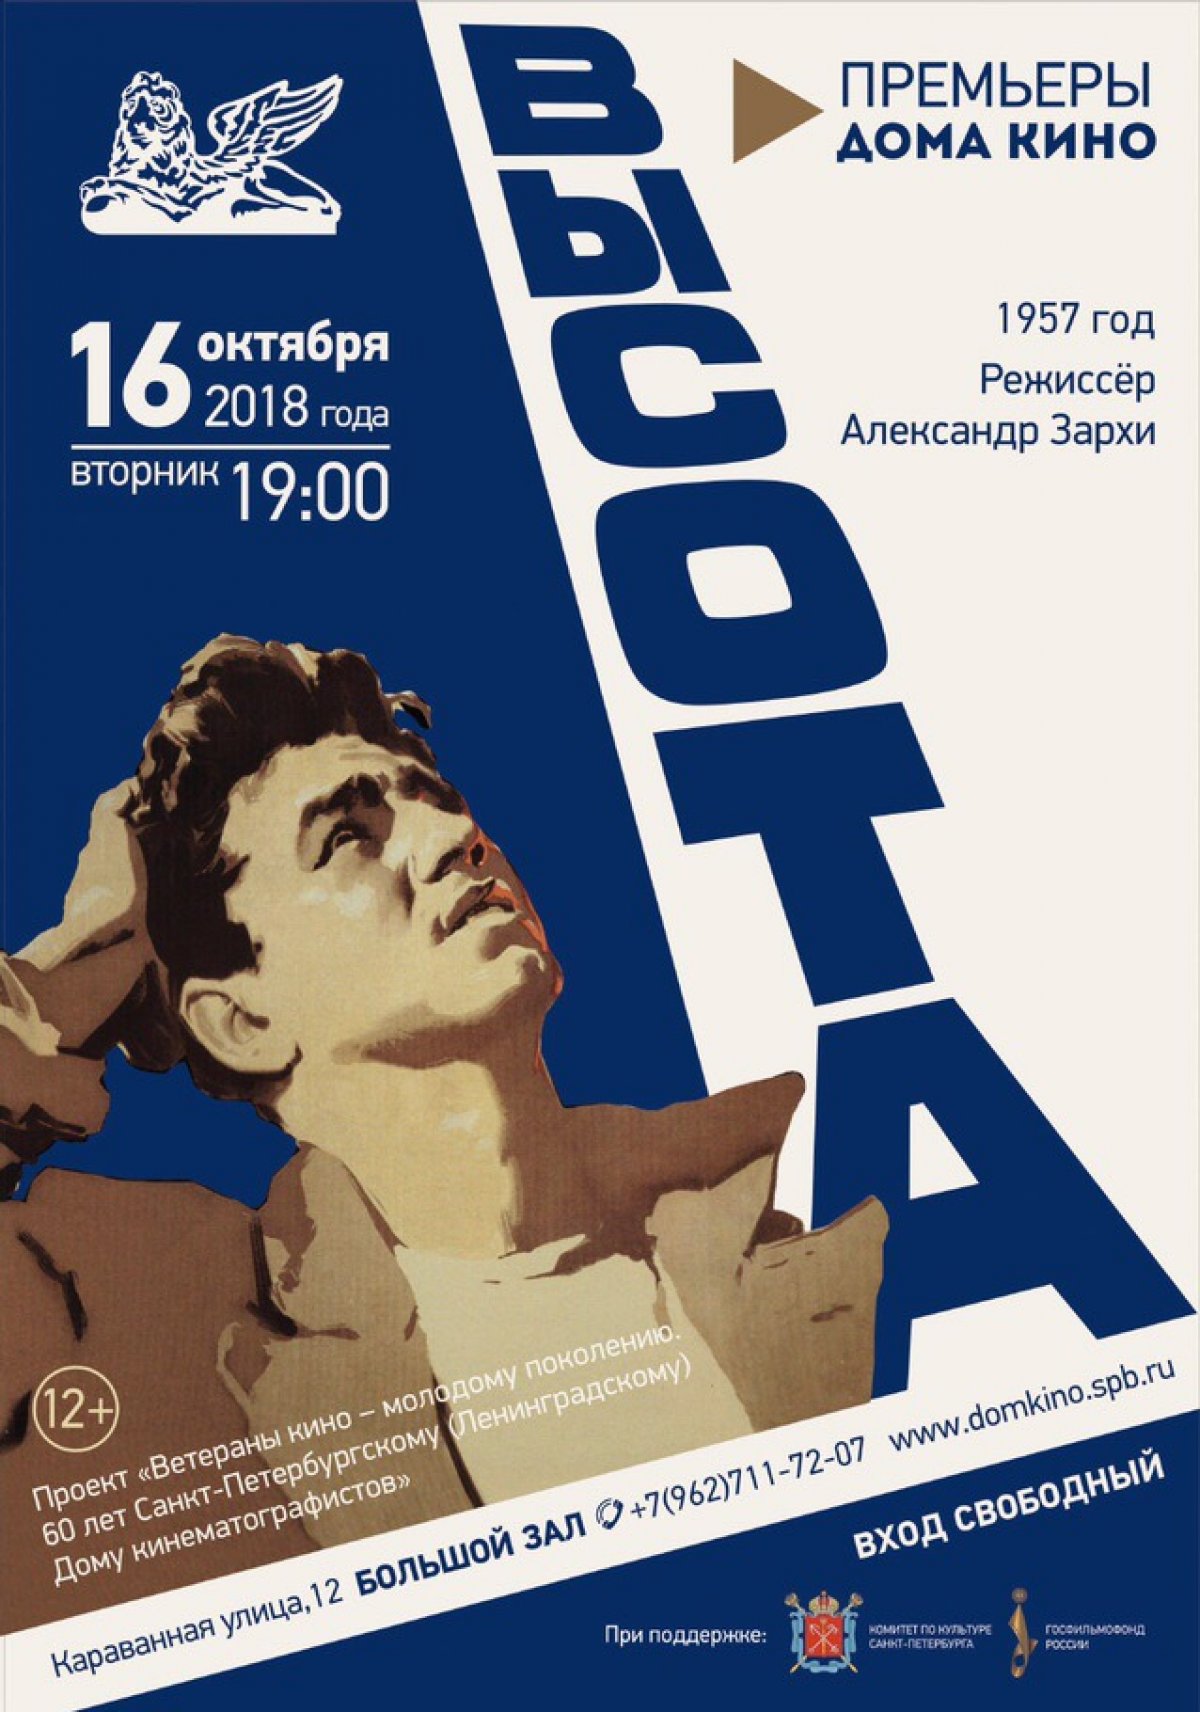 16 октября в 19.00 в Доме кино режиссерский дебют мастера советского кино Александра Зархи «Высота» (1957 год).